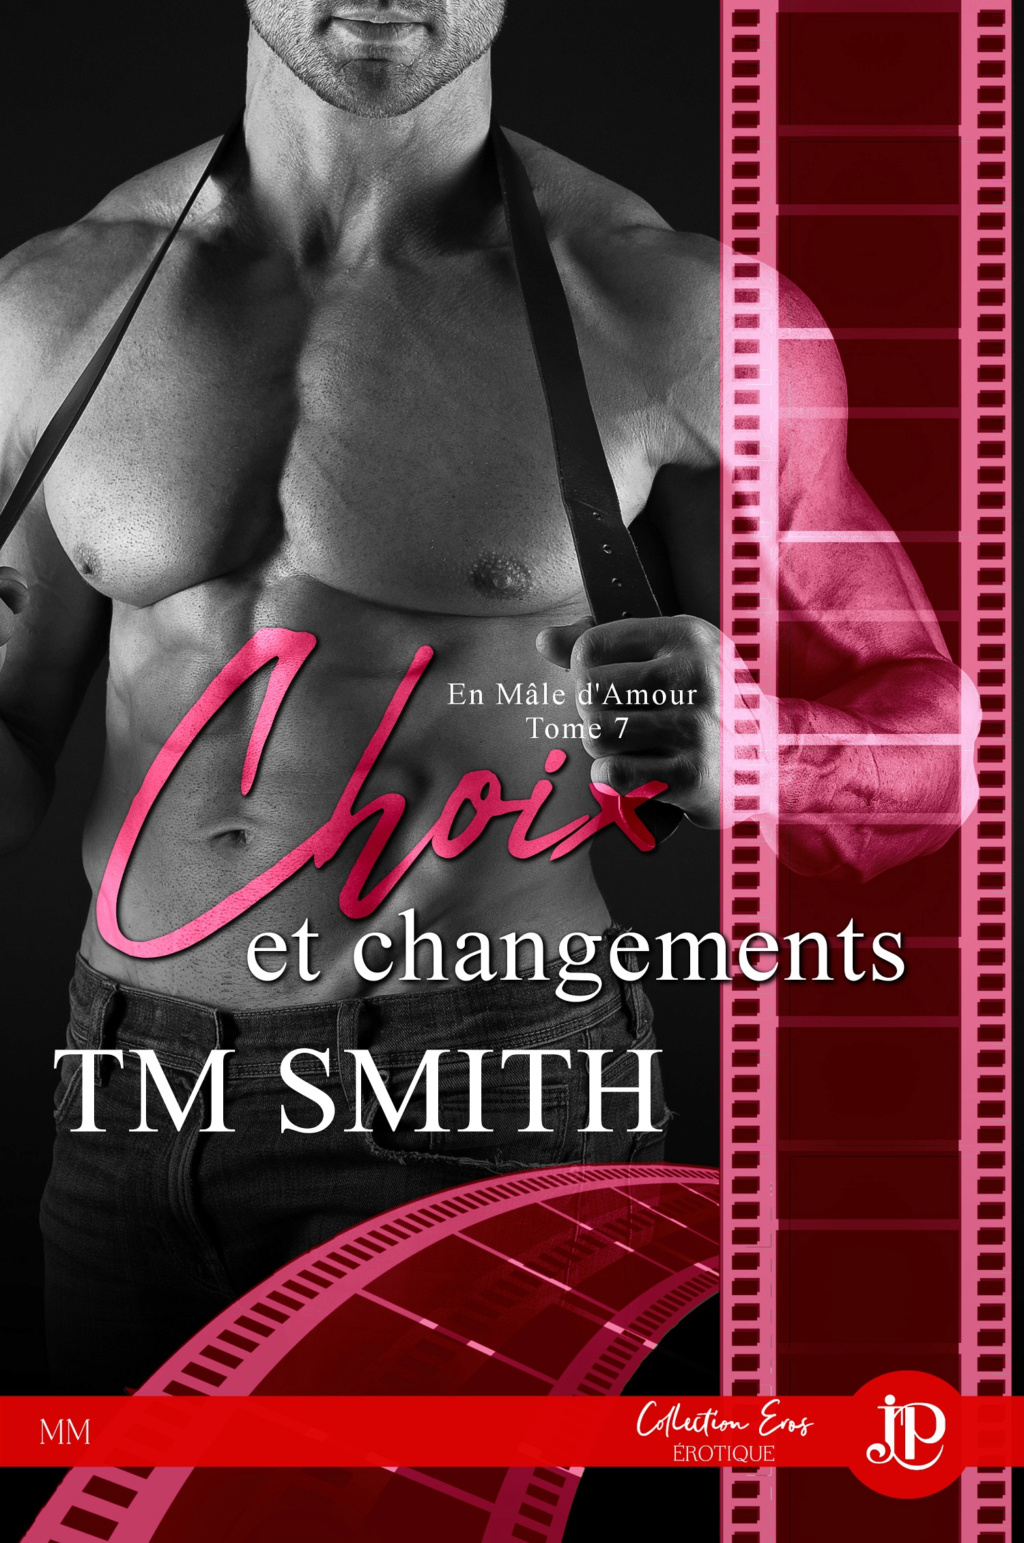 En mâle d'amour - Tome 7 : Choix et changements de T.M. Smith Fd053410